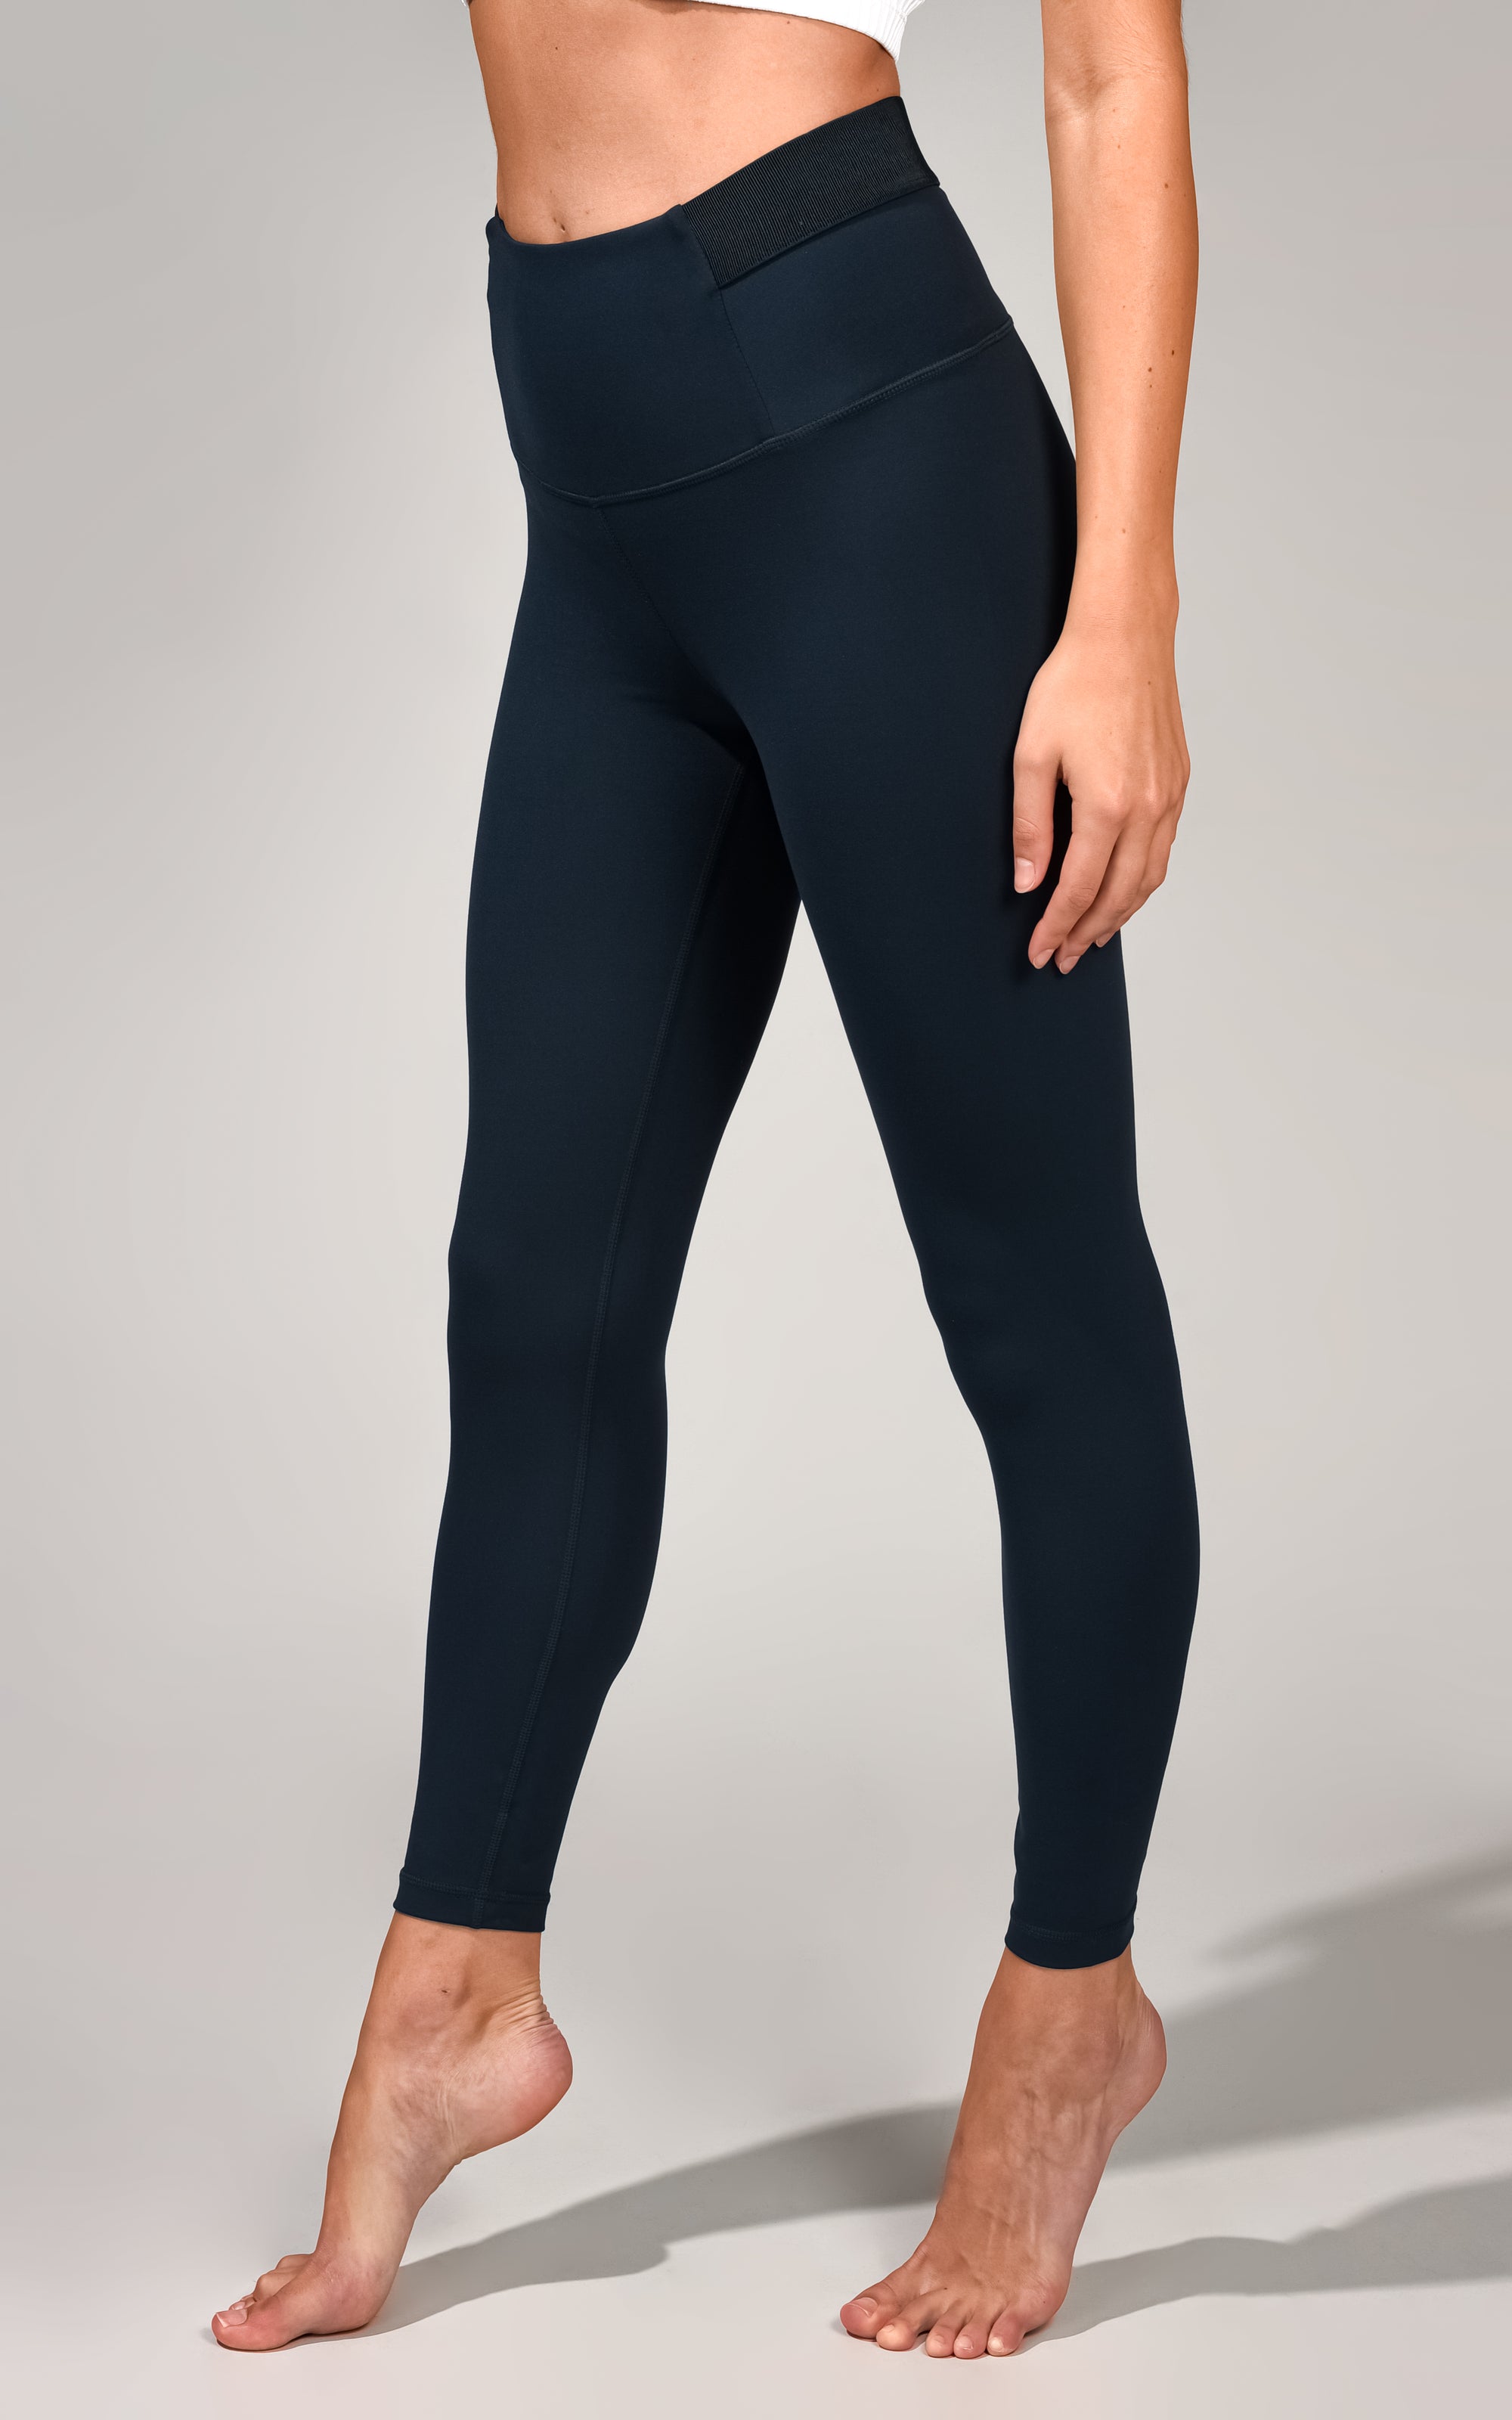 Yogalicious Blue Active Pants Size M - 60% off